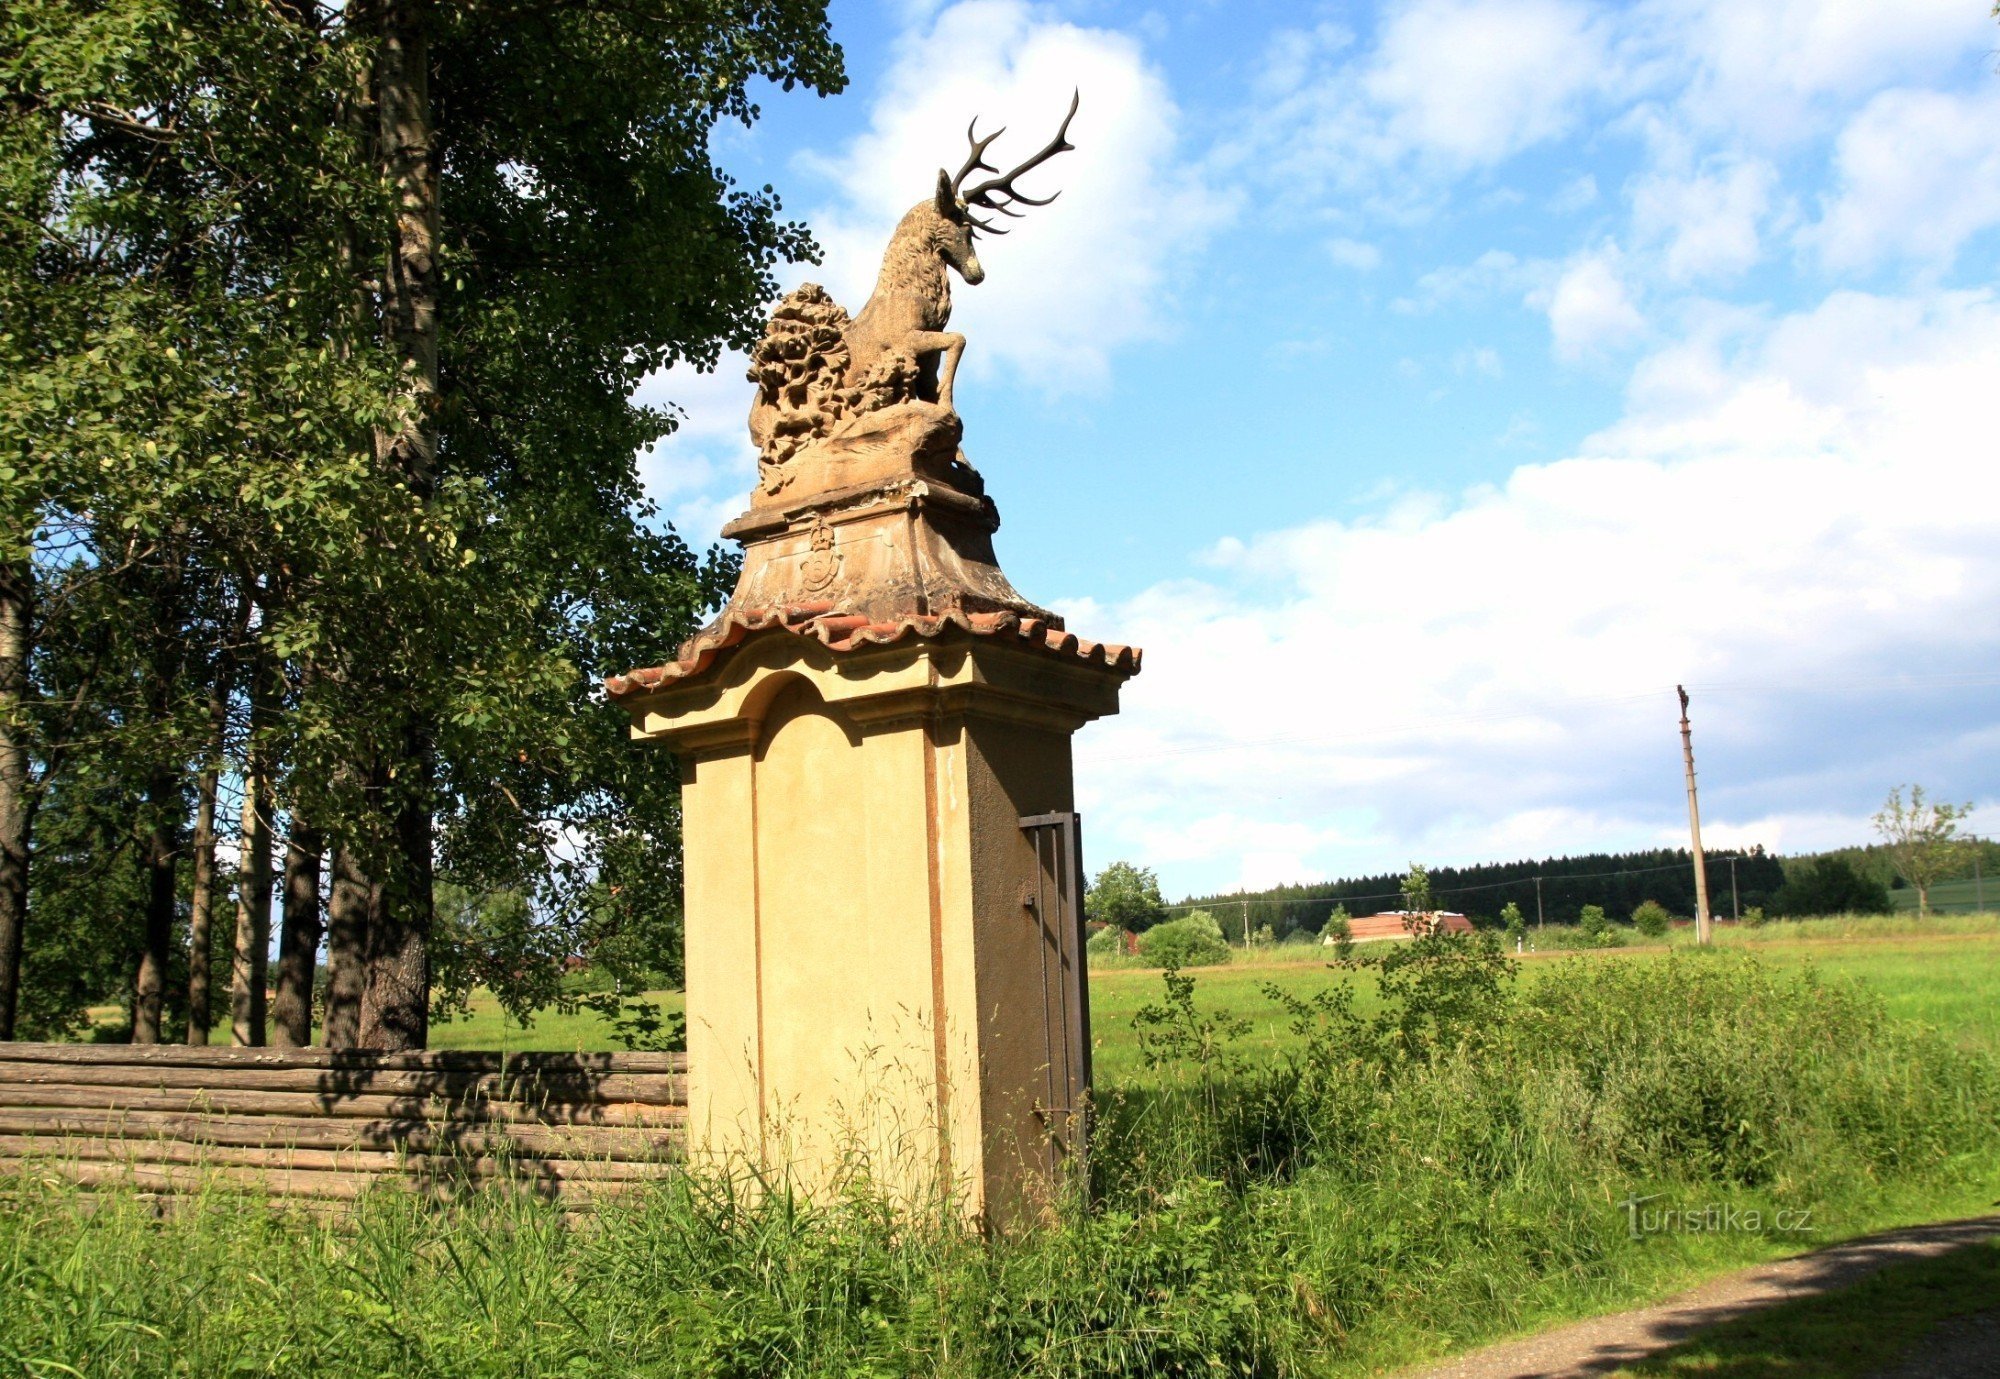 Statua di cervo nel cancello d'ingresso